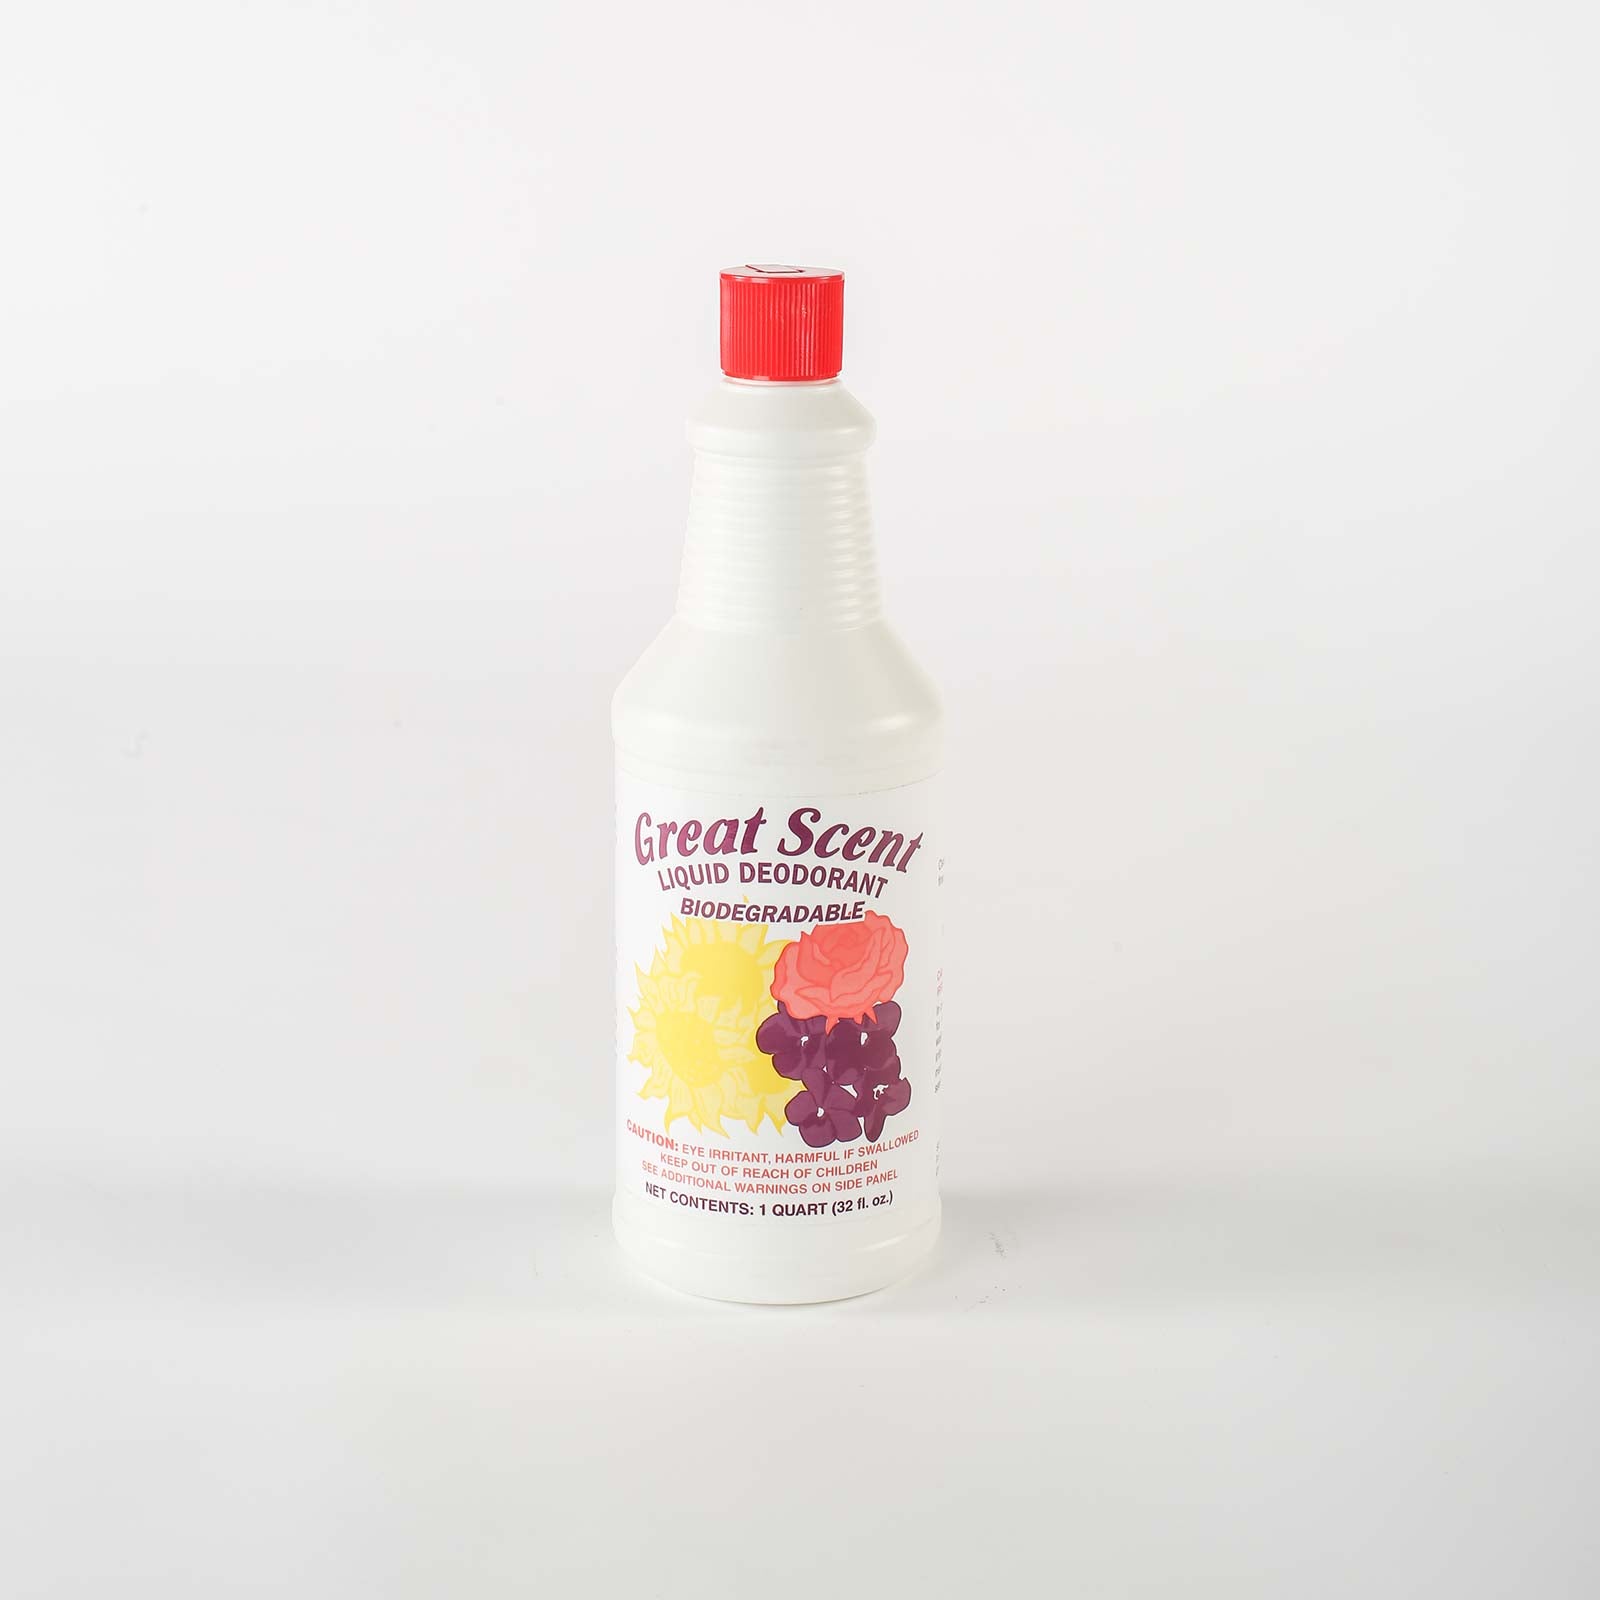 Great Scent Liquid Deodorant - Cleaning Ideas 